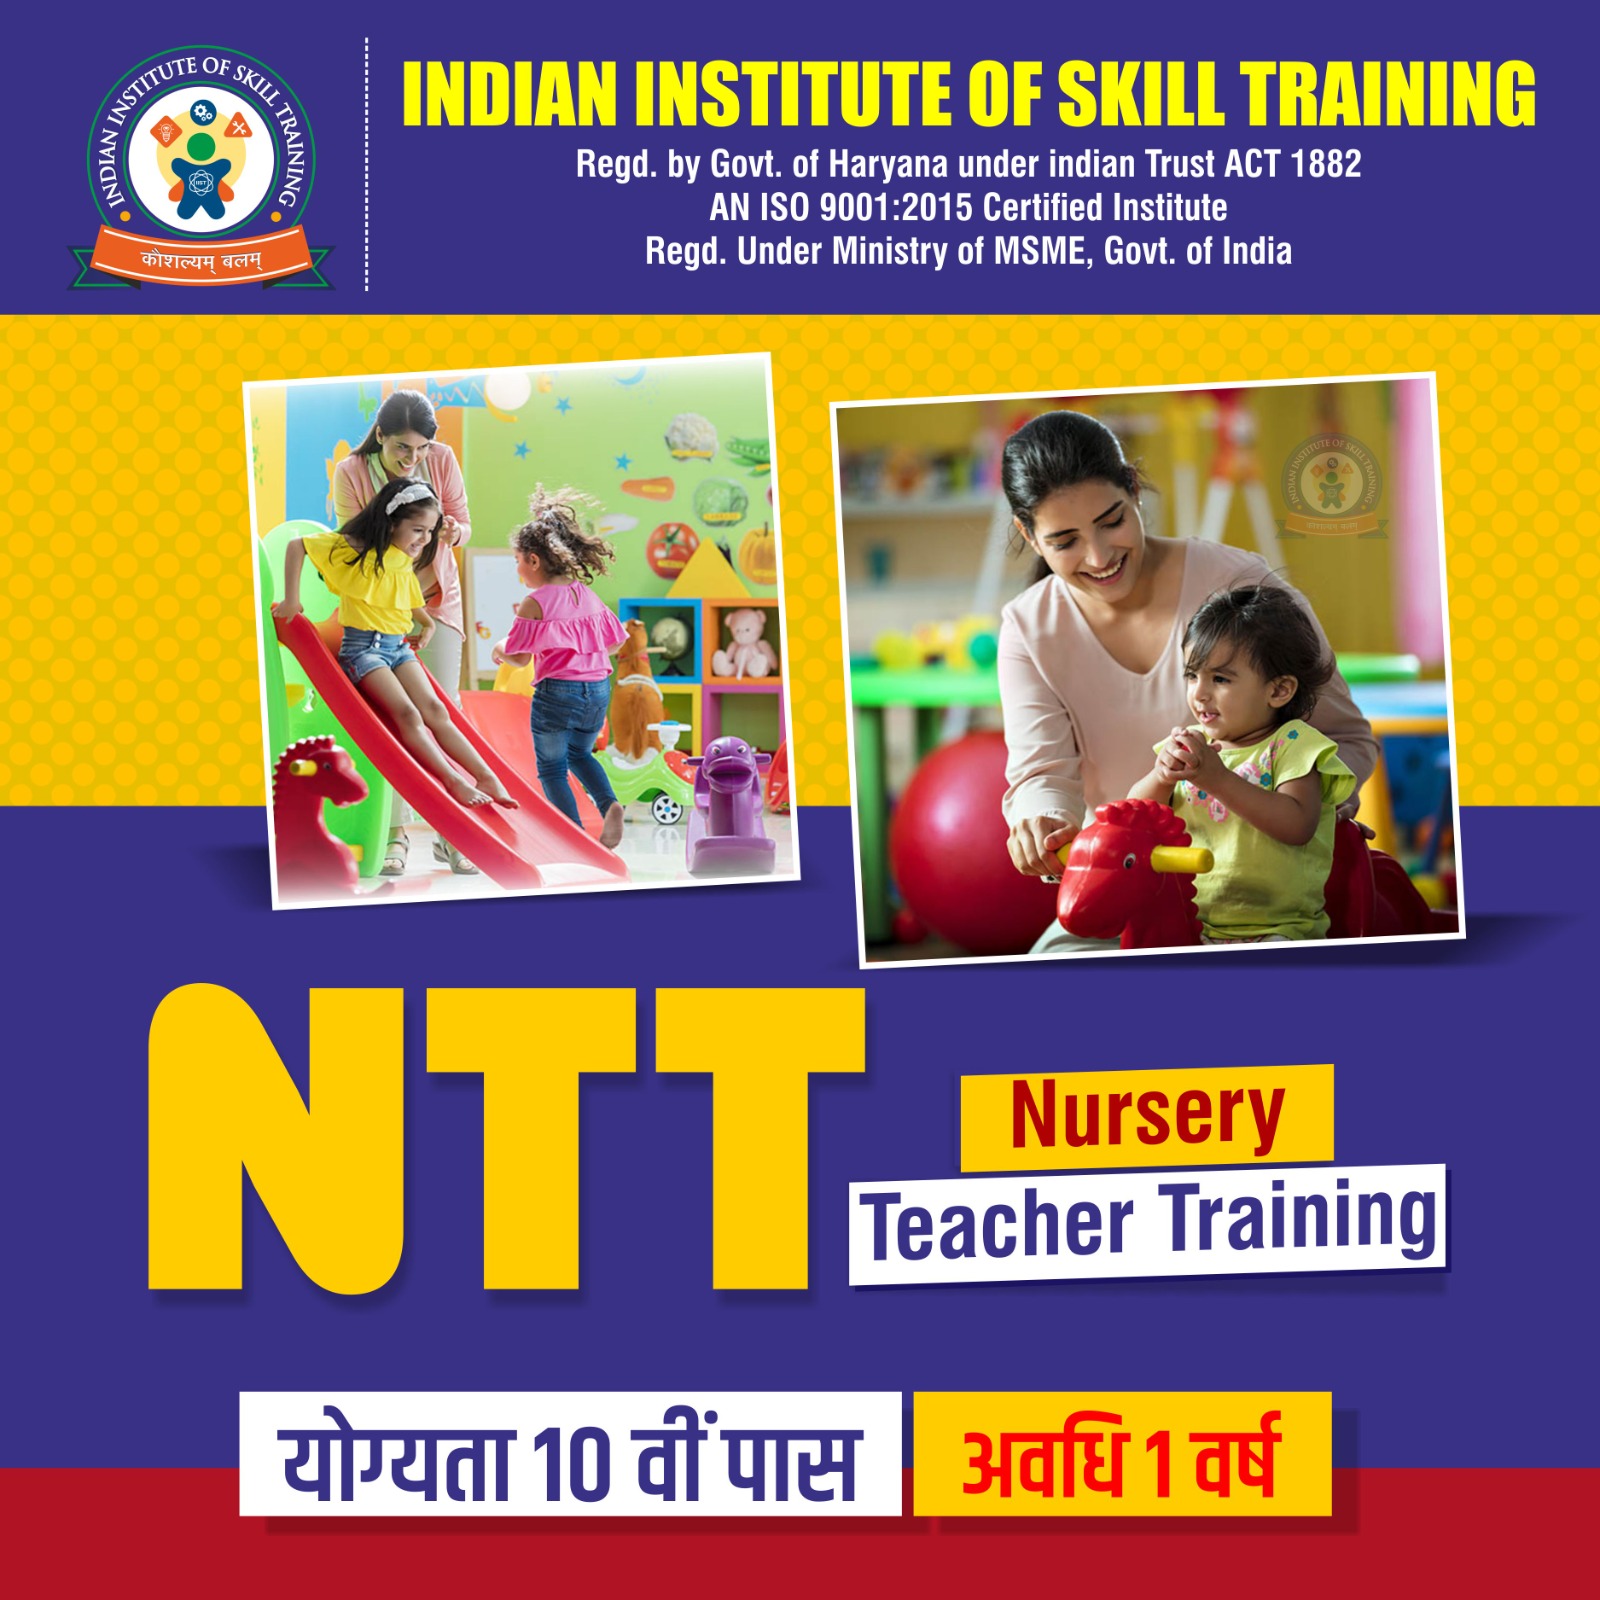 Indian Institute of Skill Training